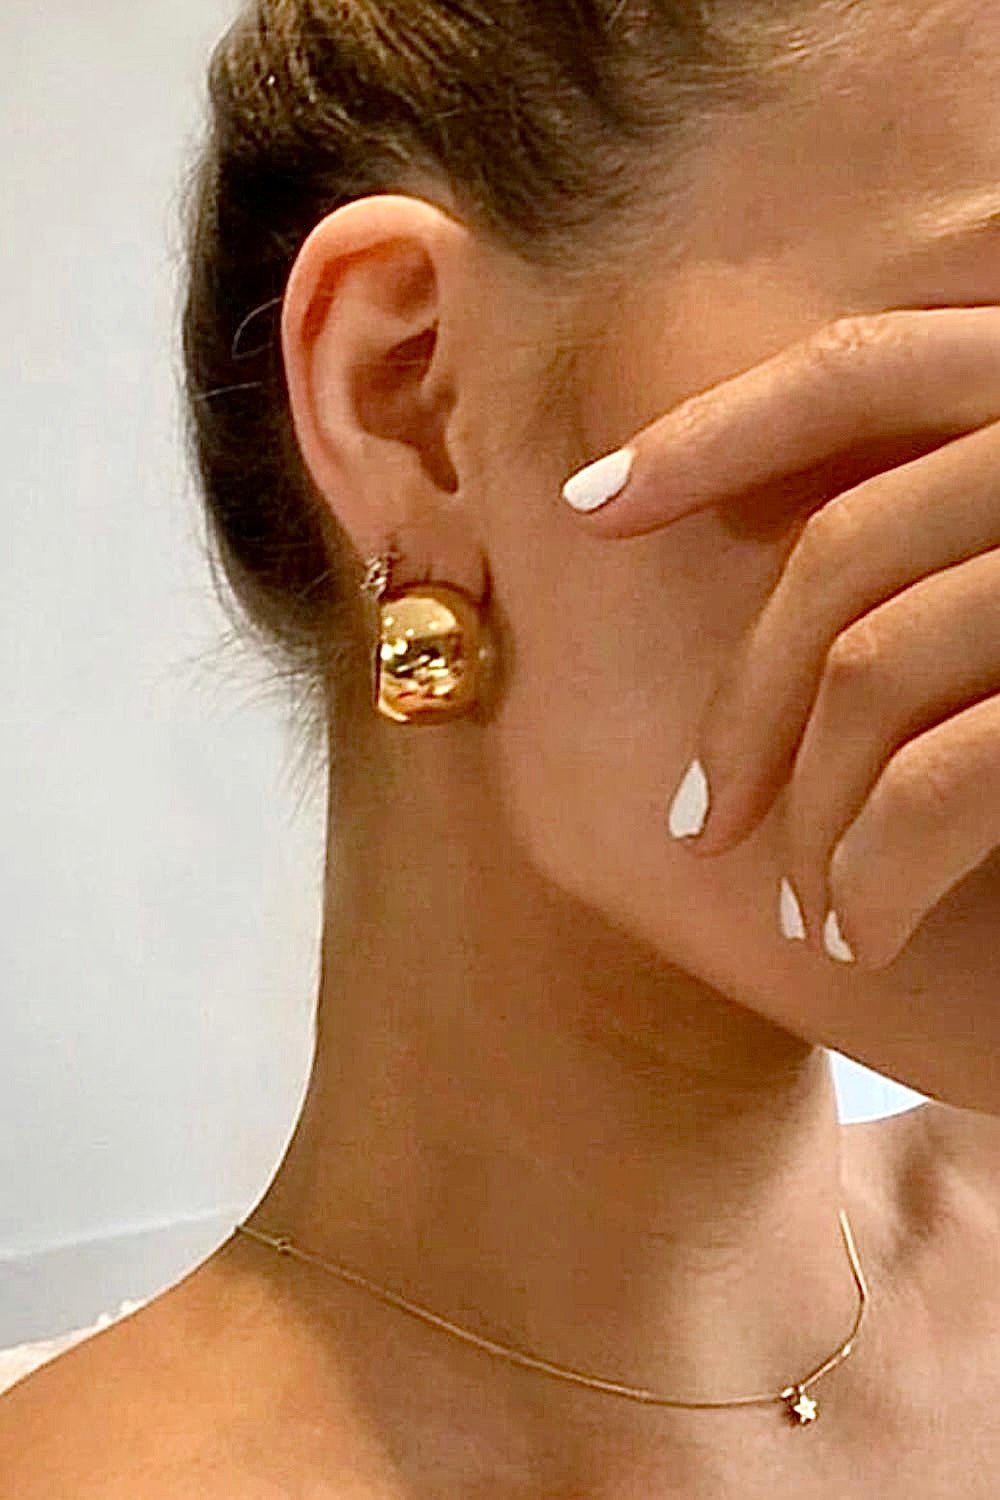 18K Gold Plated C-Hoop Earrings - PINKCOLADA--100100438865145